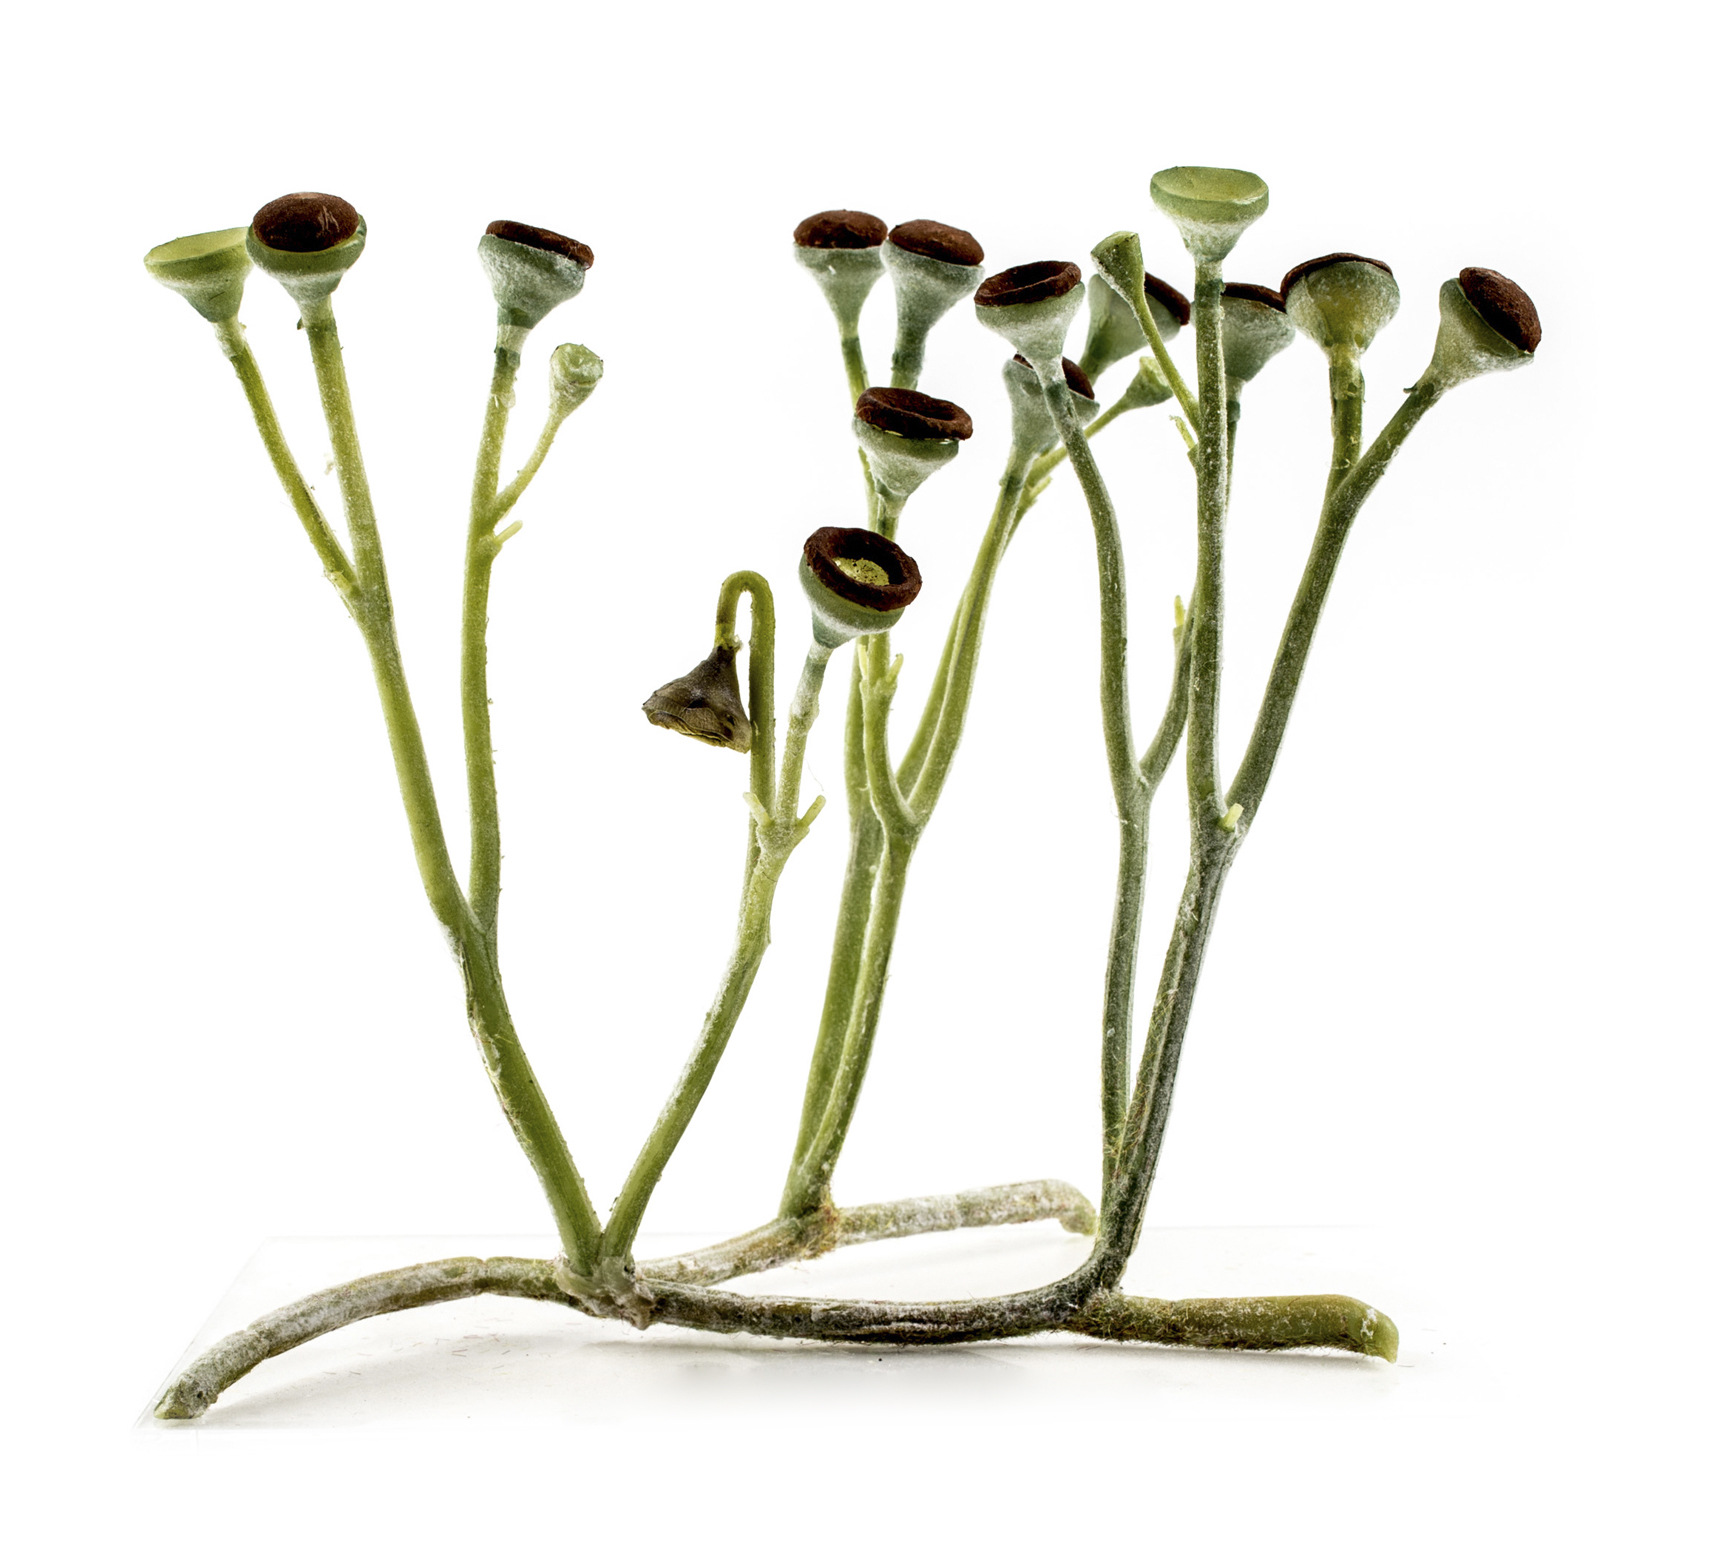 Průduchy měla již Cooksonia - nejjednodušší cévnatá rostlina. Její větvené stonky jsou zakončeny kulovitými výtrusnicemi. Rekonstrukce rostliny je z dílny Matteo De Stefano/MUSE  Science Museum of Trento. Wikimedia Italia.